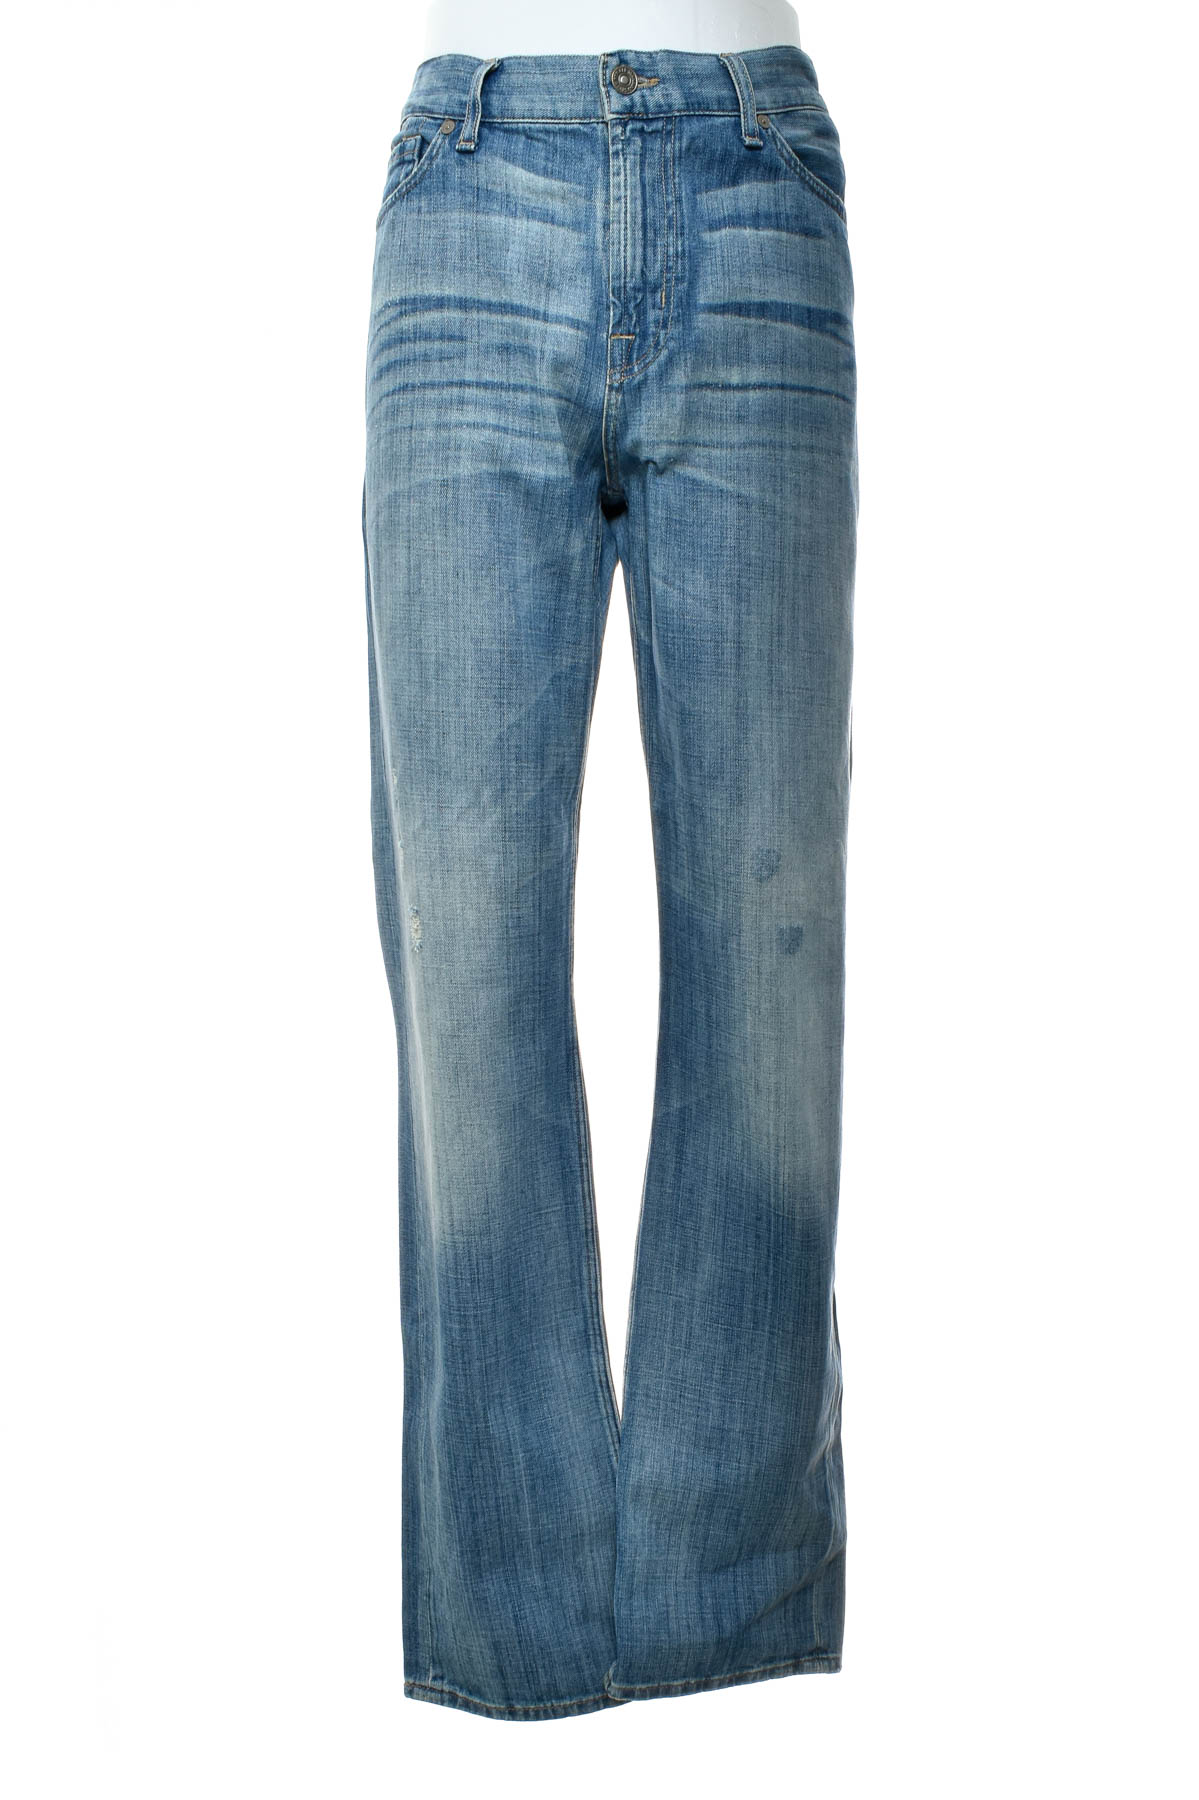 Jeans pentru bărbăți - 7 For All Mankind - 0